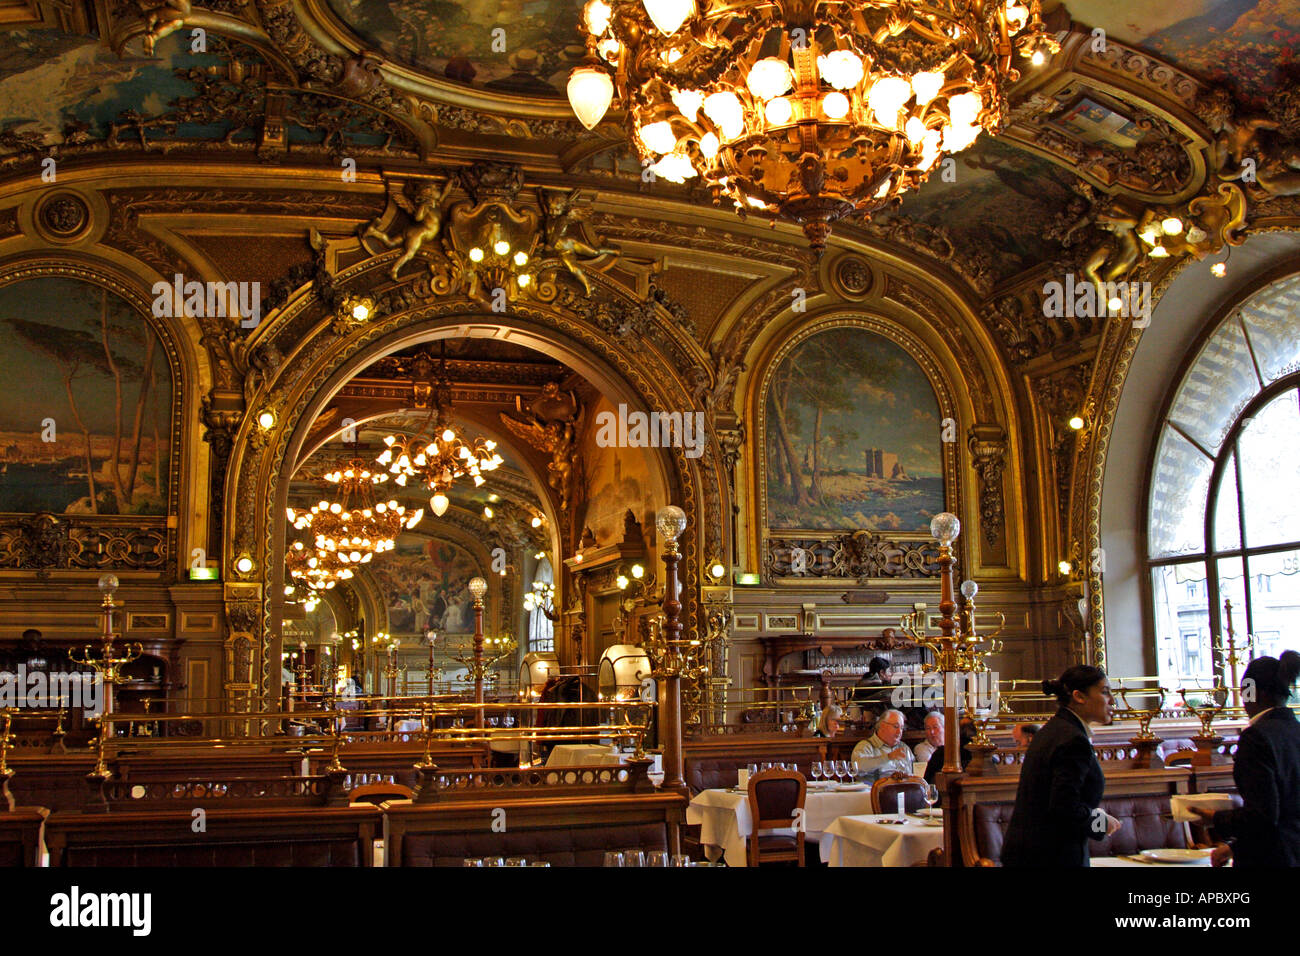 The restaurant “Le train bleue” inside the train station Gare de Lyon in Paris Stock Photo